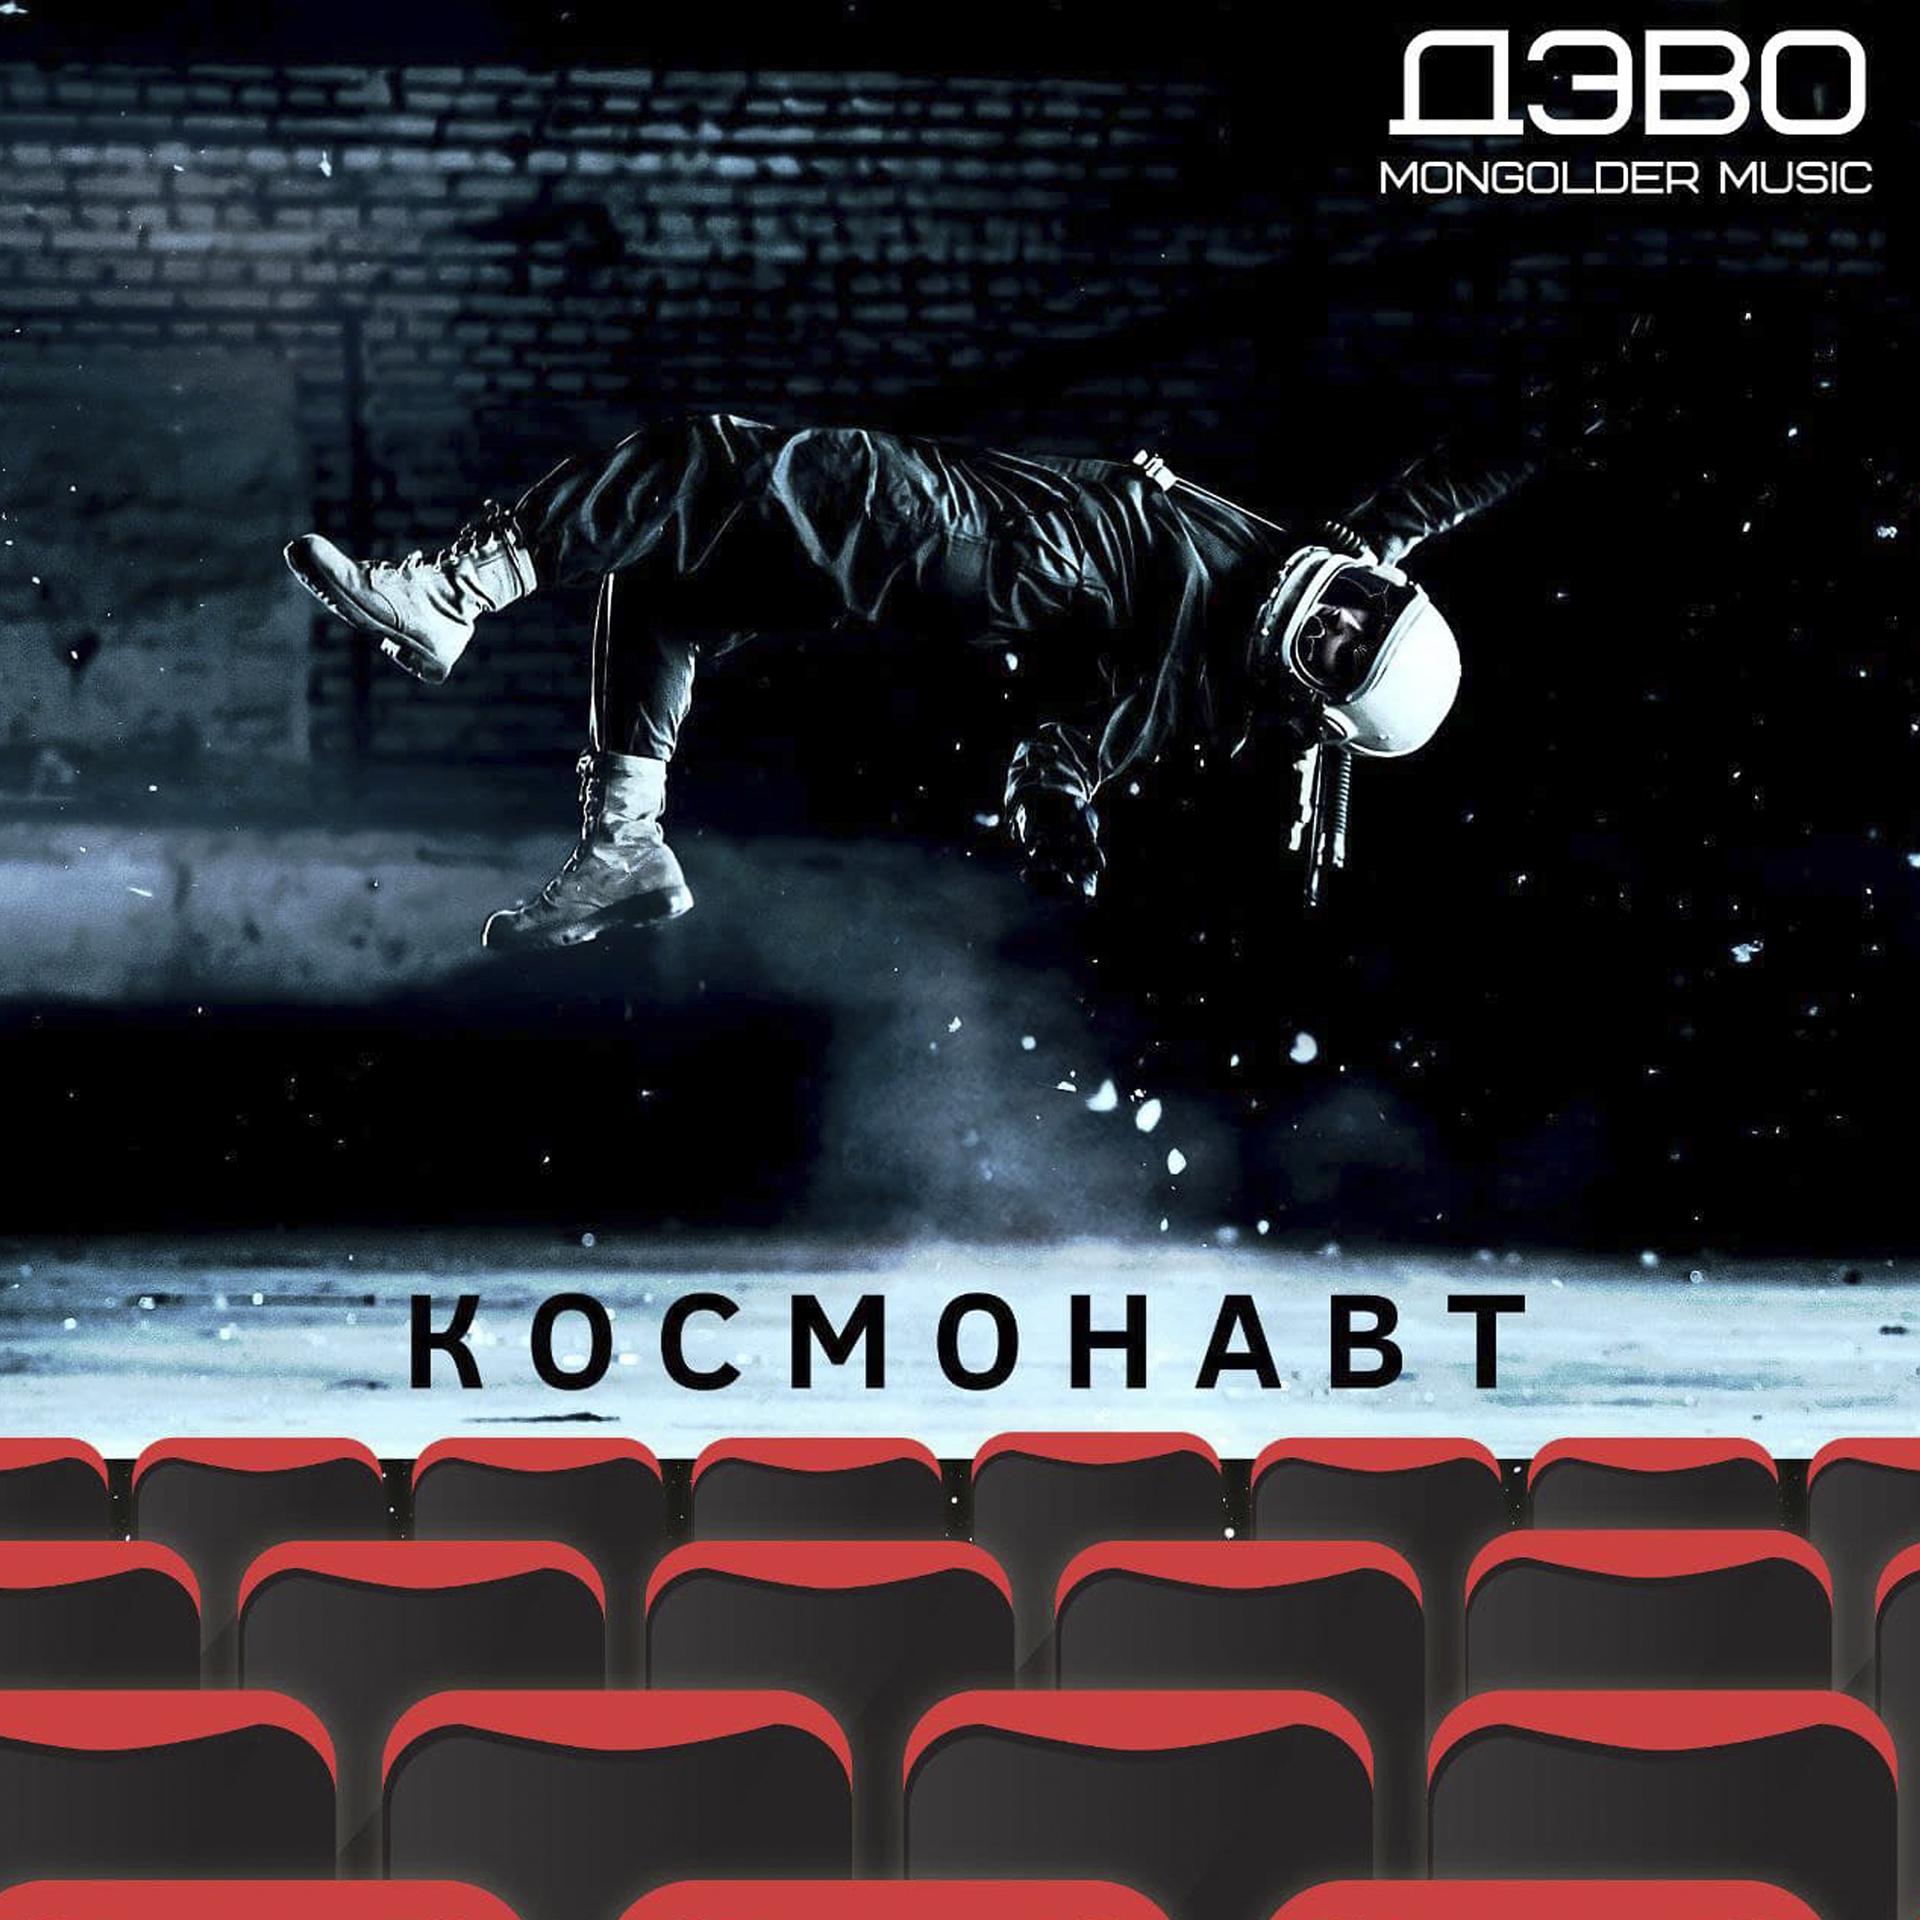 Постер к треку ДЭВО - Космонавт